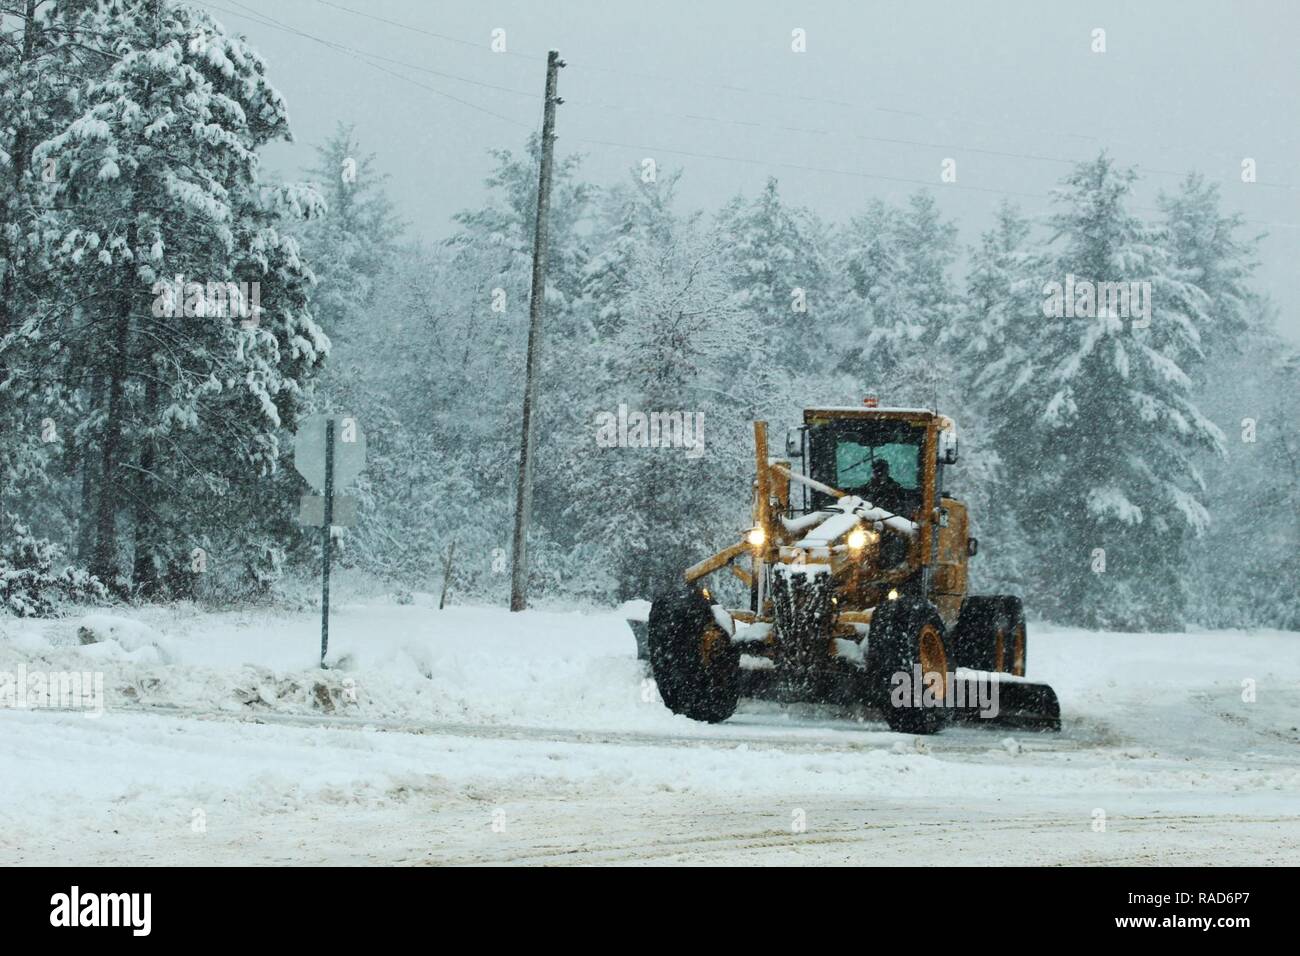 Una pesante-operatore dell' attrezzatura con il Fort McCoy rimozione neve contraente, Kaiyuh Services LLC di Anchorage in Alaska, aziona un classificatore per spostare la neve gen. 9, 2017 a Fort McCoy. Kaiyuh divenne il Fort McCoy motivi e spazzaneve contraente nel settembre 2016. Foto Stock